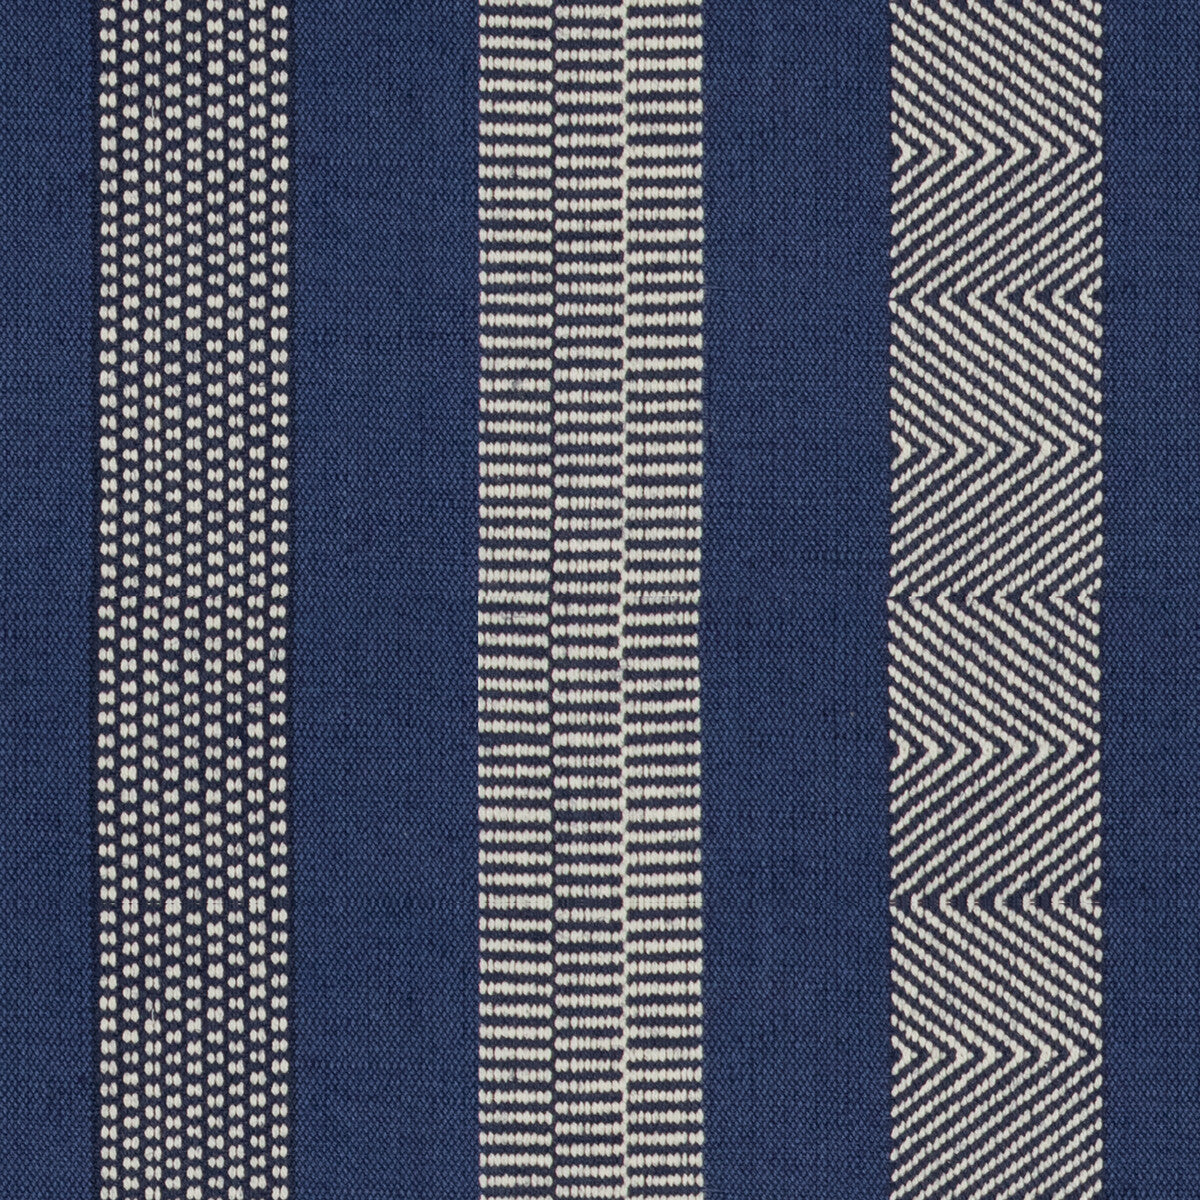 Berber fabric in blue/indigo color - pattern 2017100.540.0 - by Lee Jofa in the Oscar De La Renta III collection